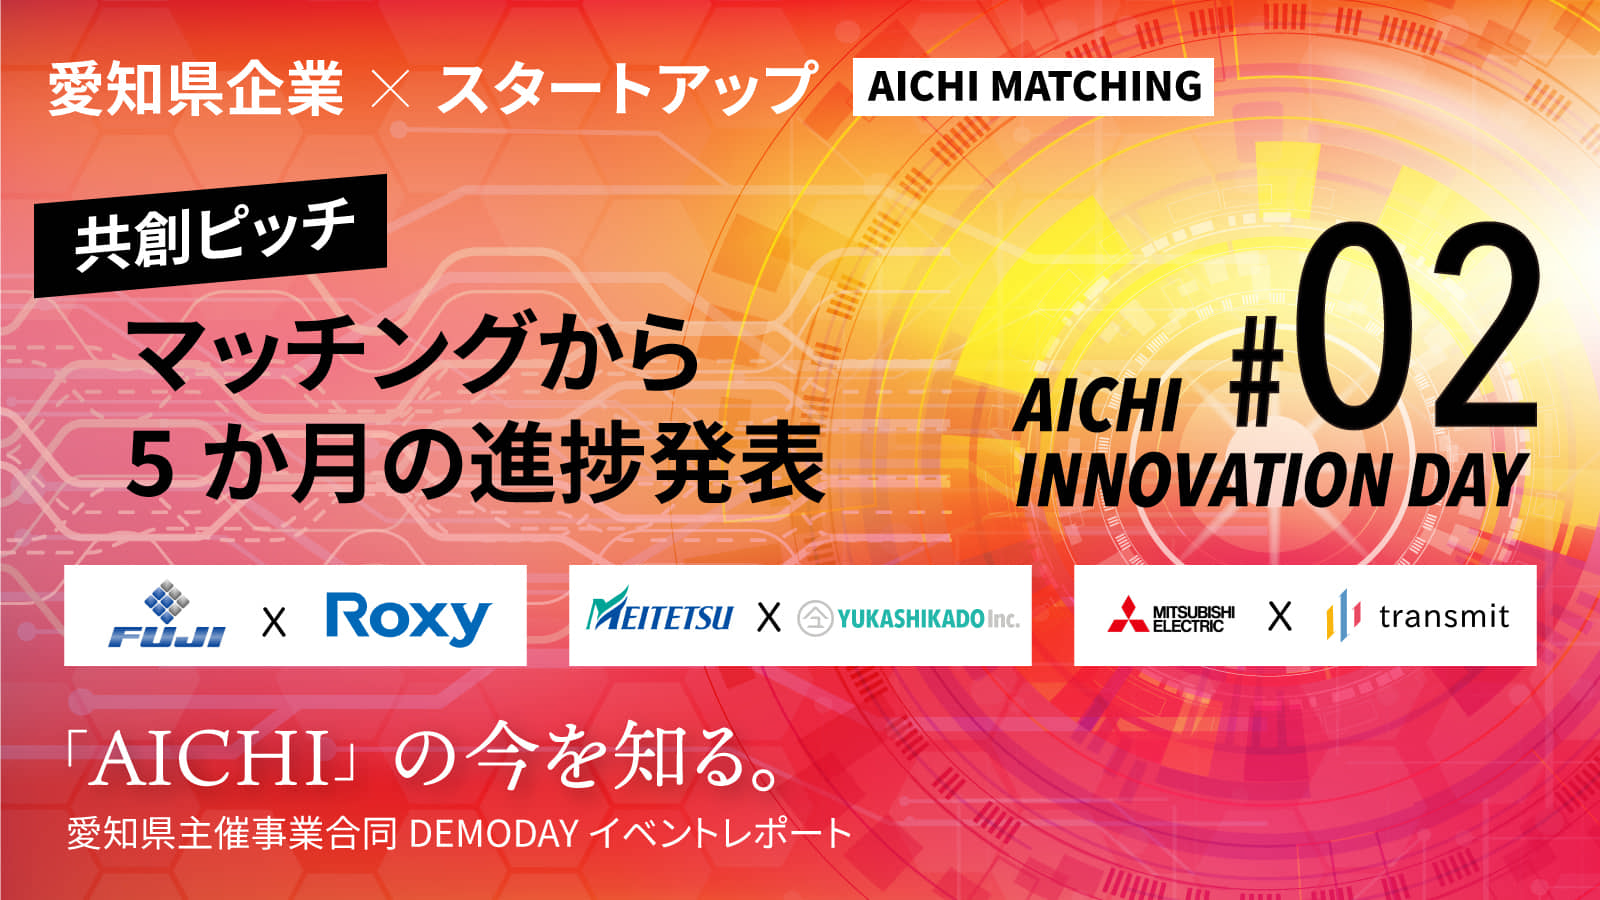 Aichi Innovation Day レポート 愛知県企業とスタートアップの化学反応で生まれた新たな事業とは？3チームが披露したビジネスモデルを紹介